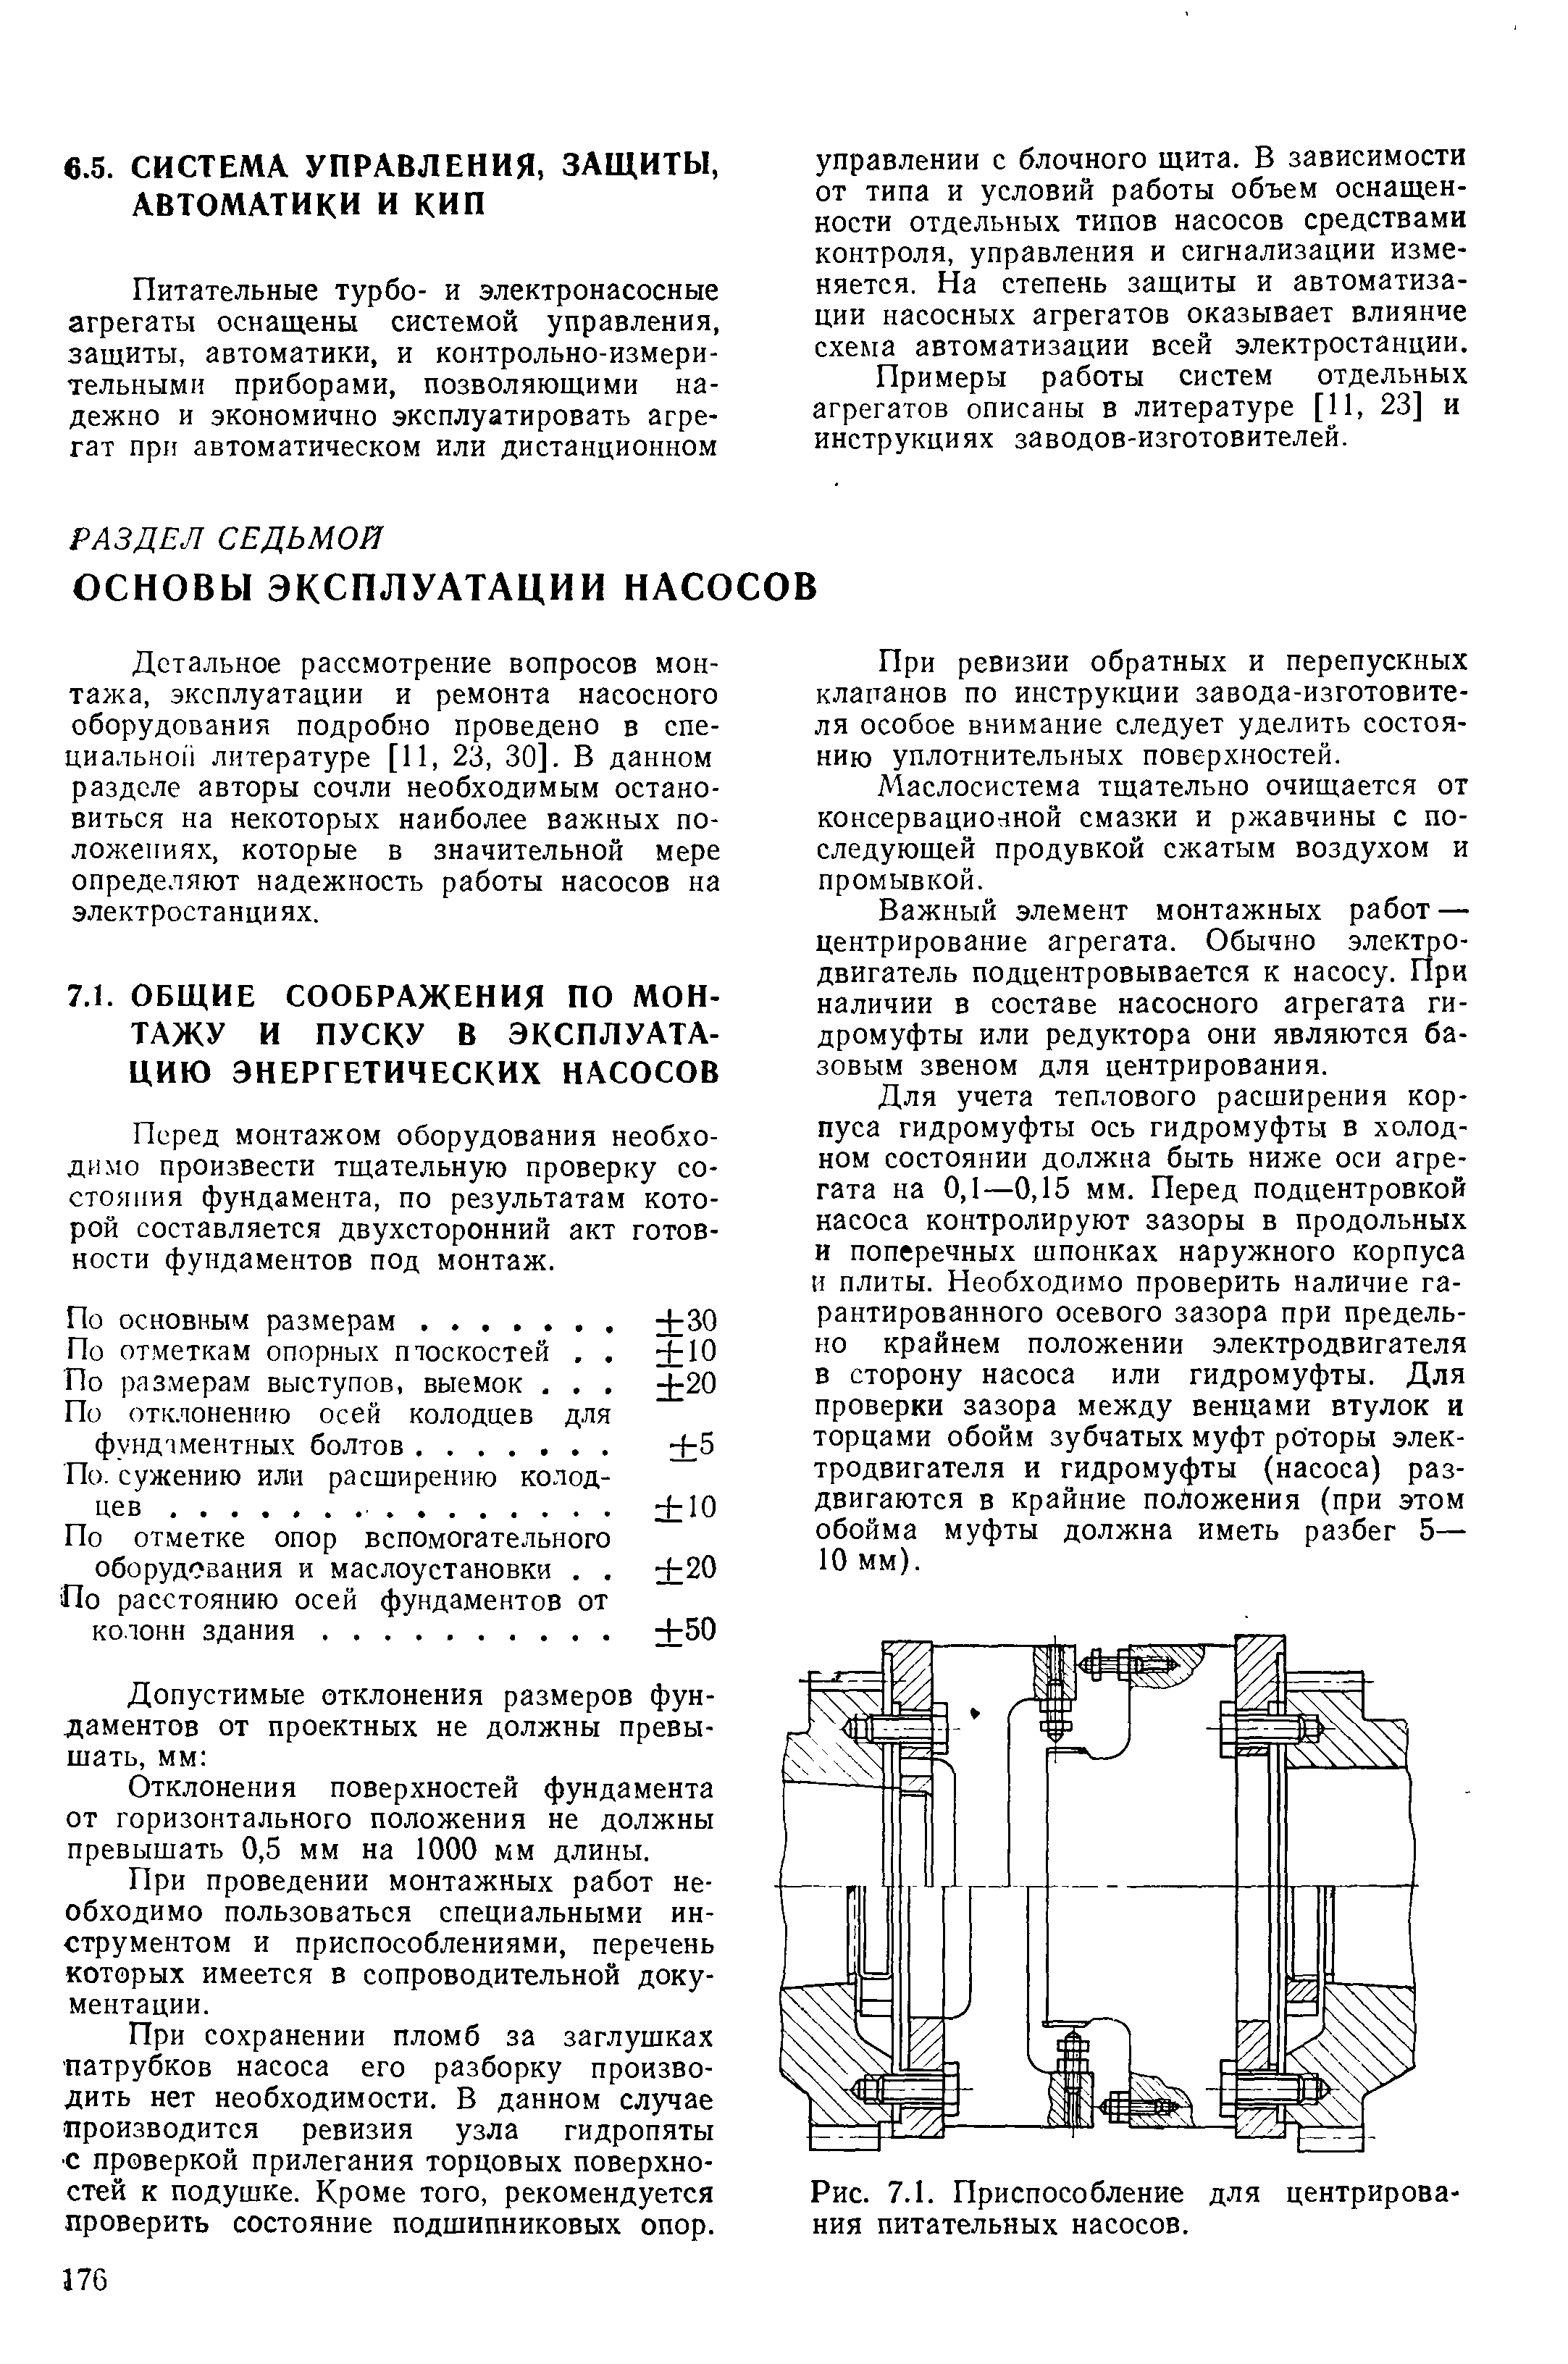 Примеры работы систем отдельных агрегатов описаны в литературе [11, 23] и инструкциях заводов-изготовителей.